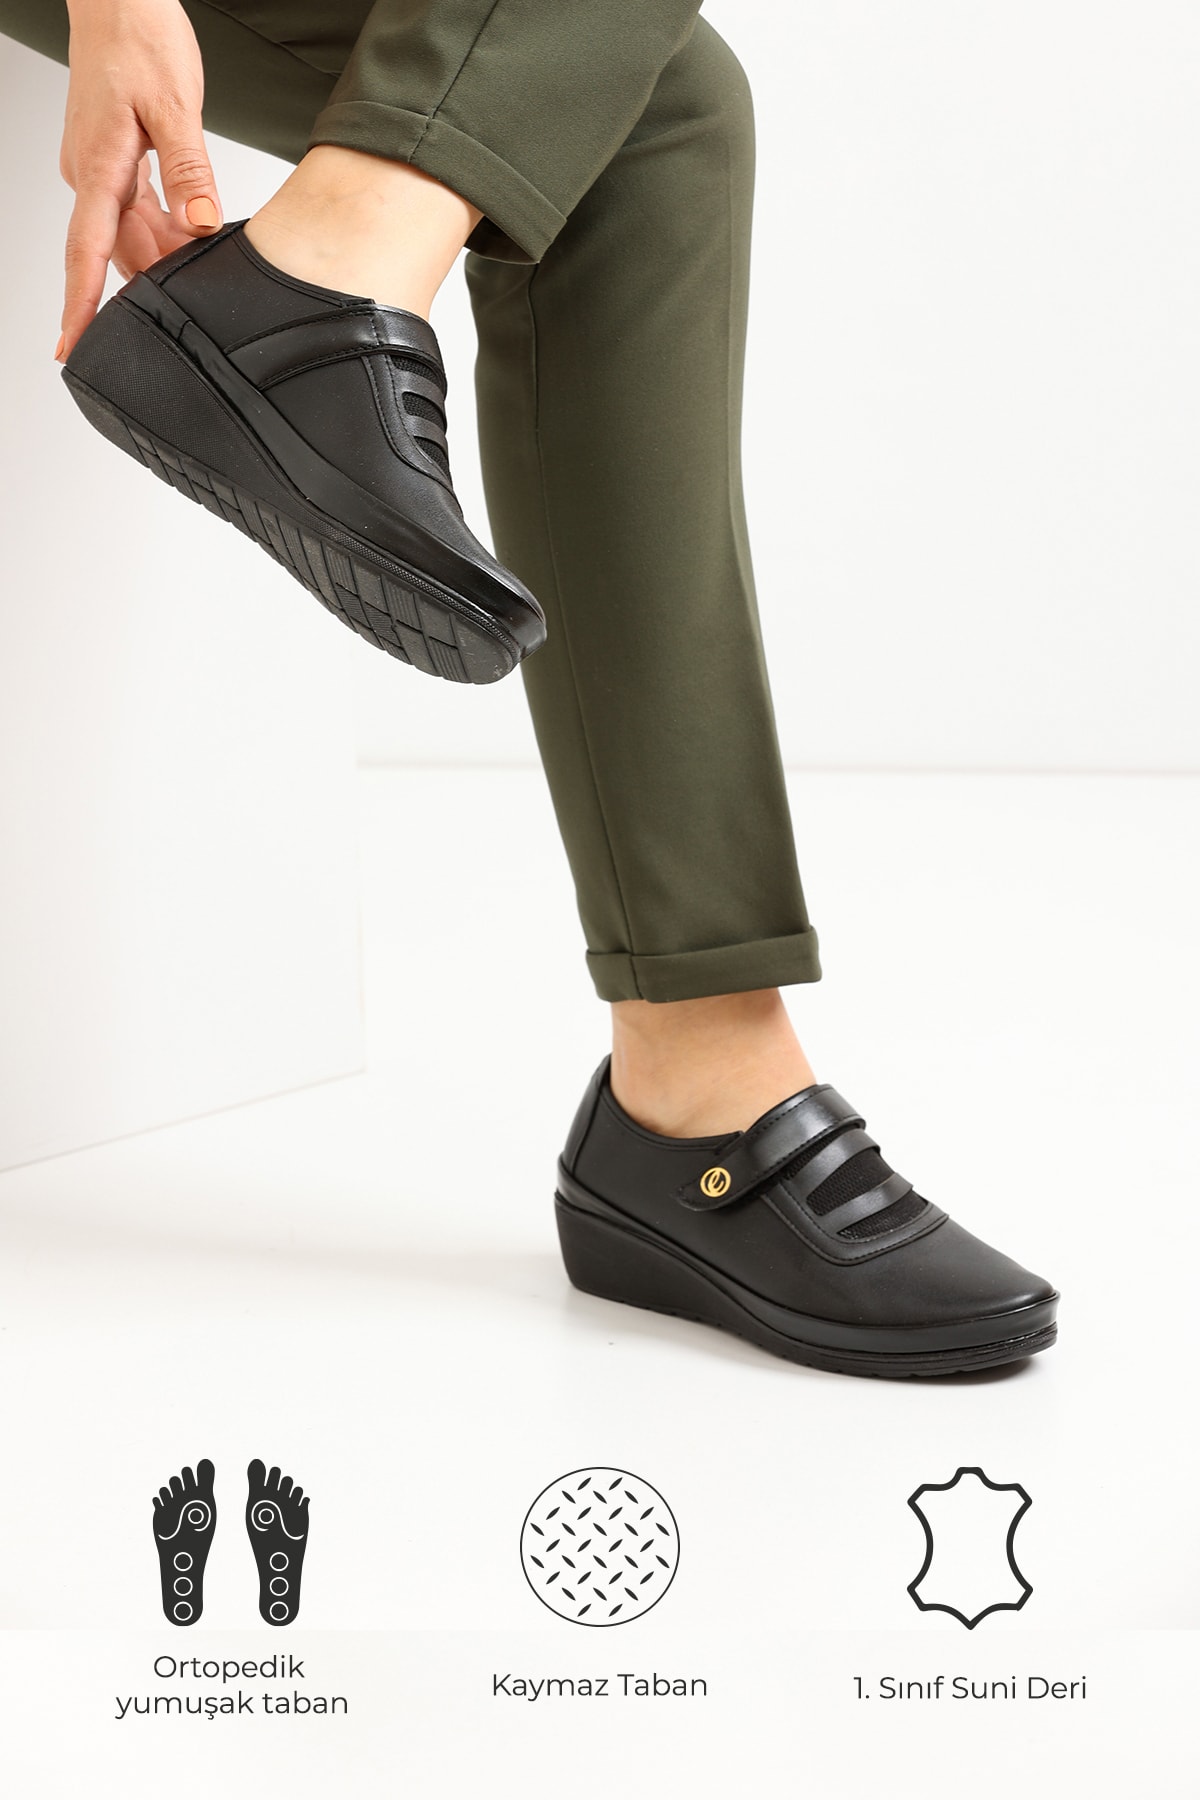 GALERİ AYAKKABI Kadın Siyah Renk Bantlı Tam Ortopedik Günlük Rahat Anne Babet Ayakkabı Yumuşak Taban Klasik Ayakkabı Fiyatı, Yorumları - TRENDYOL